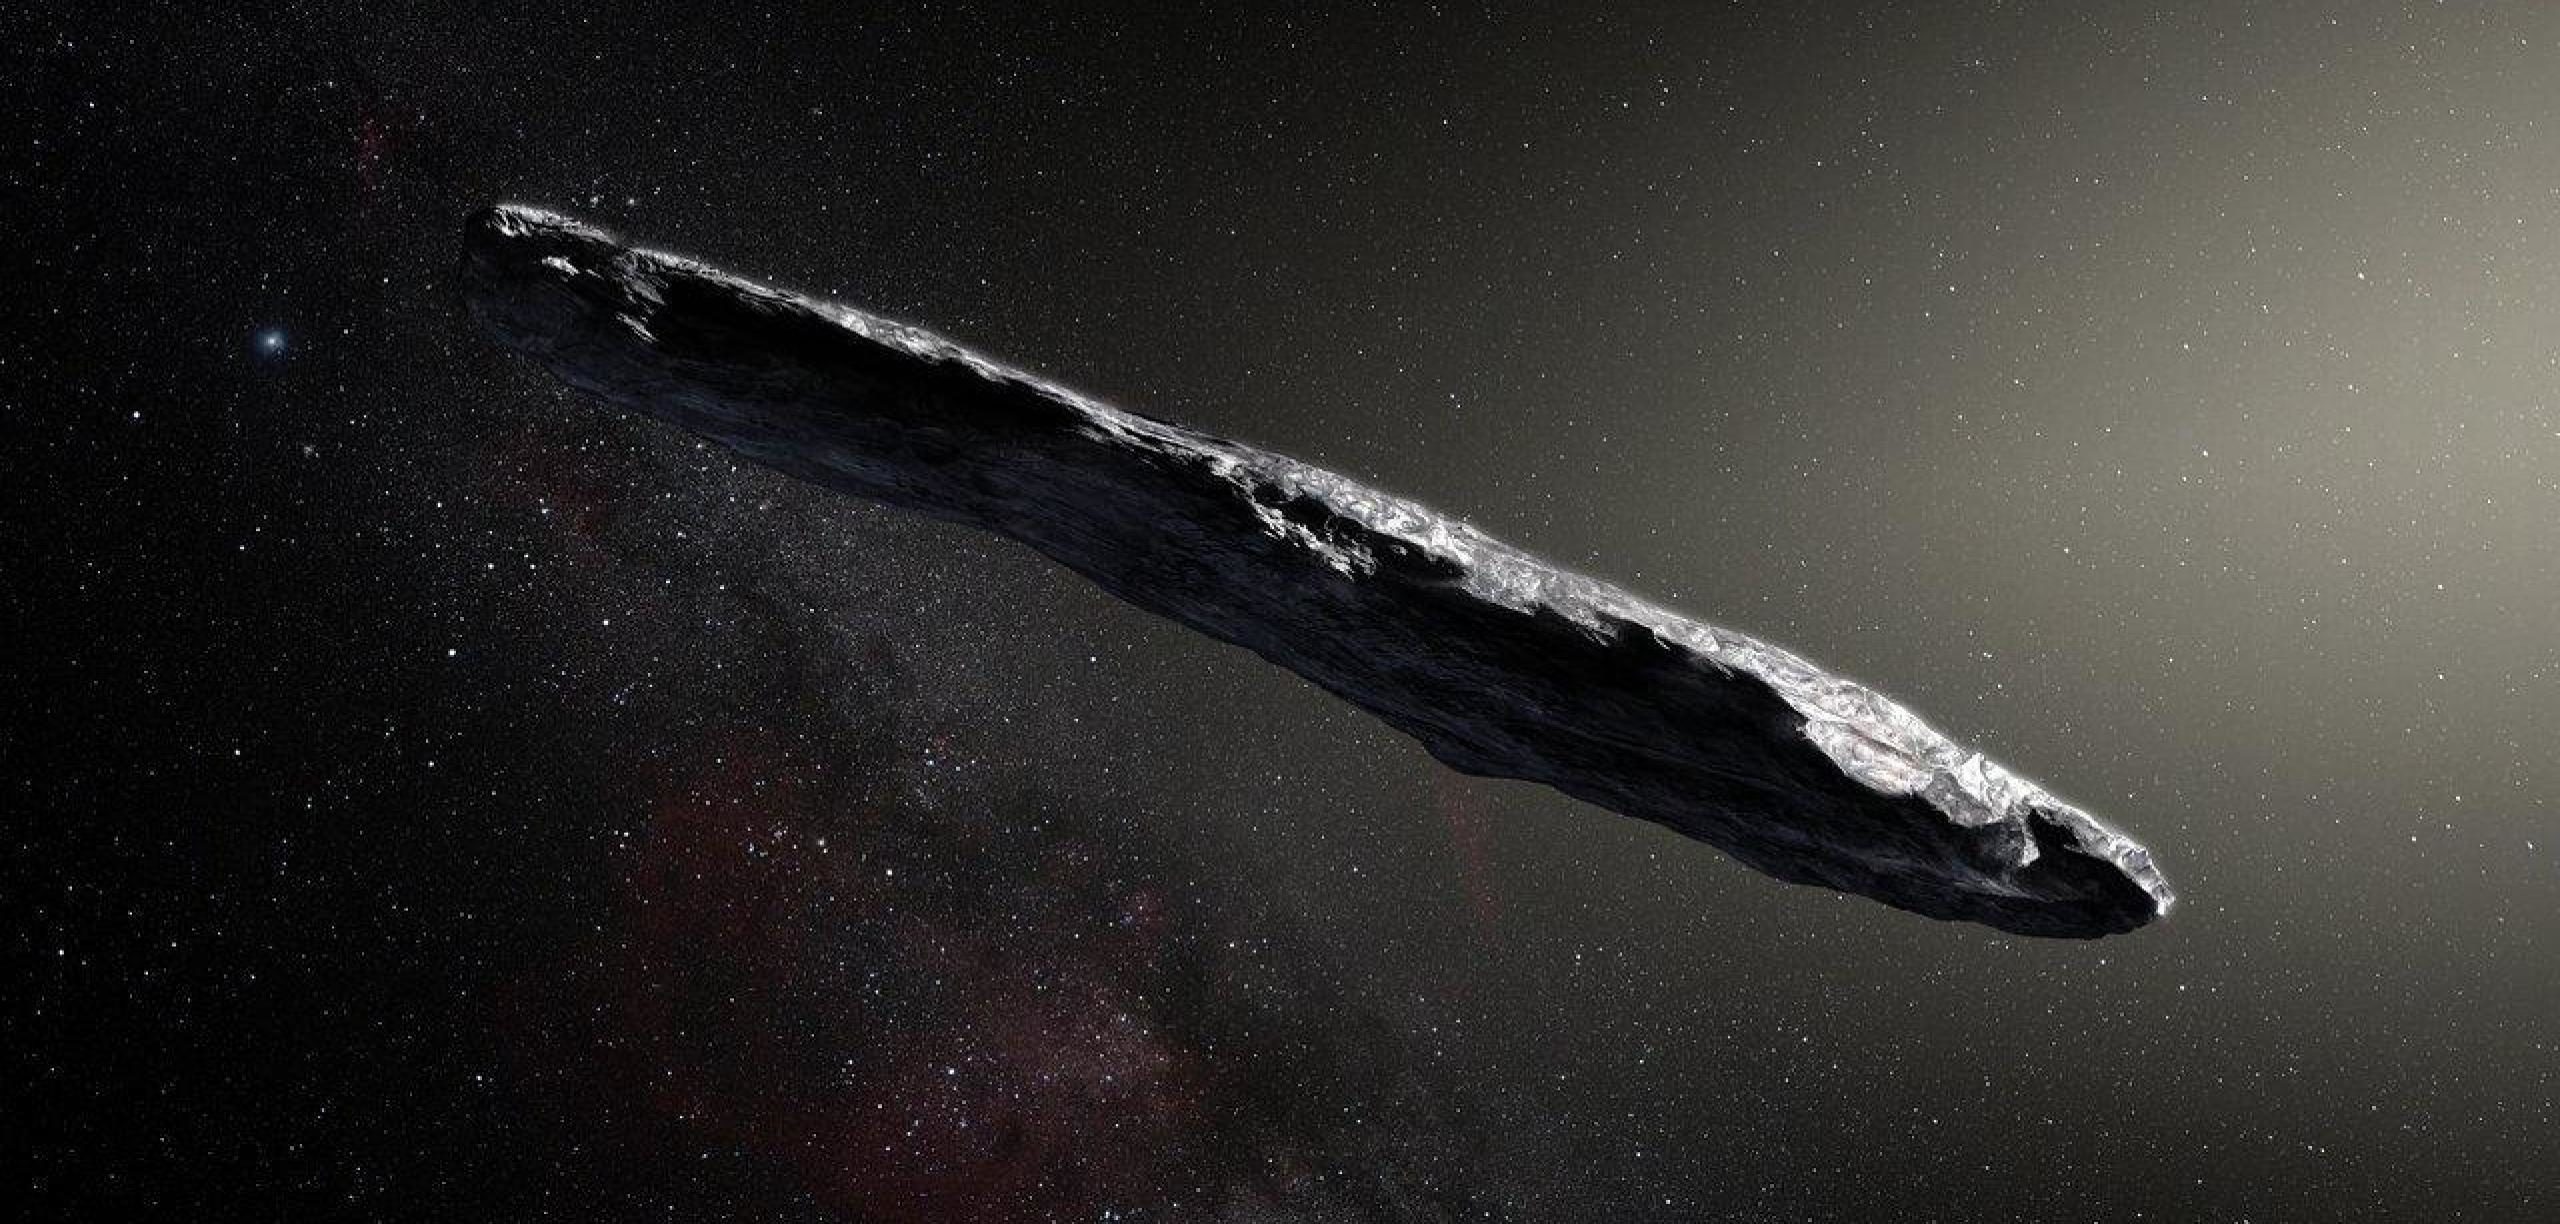 interstellarer asteroid, 1I/2017 U1 Oumuamua